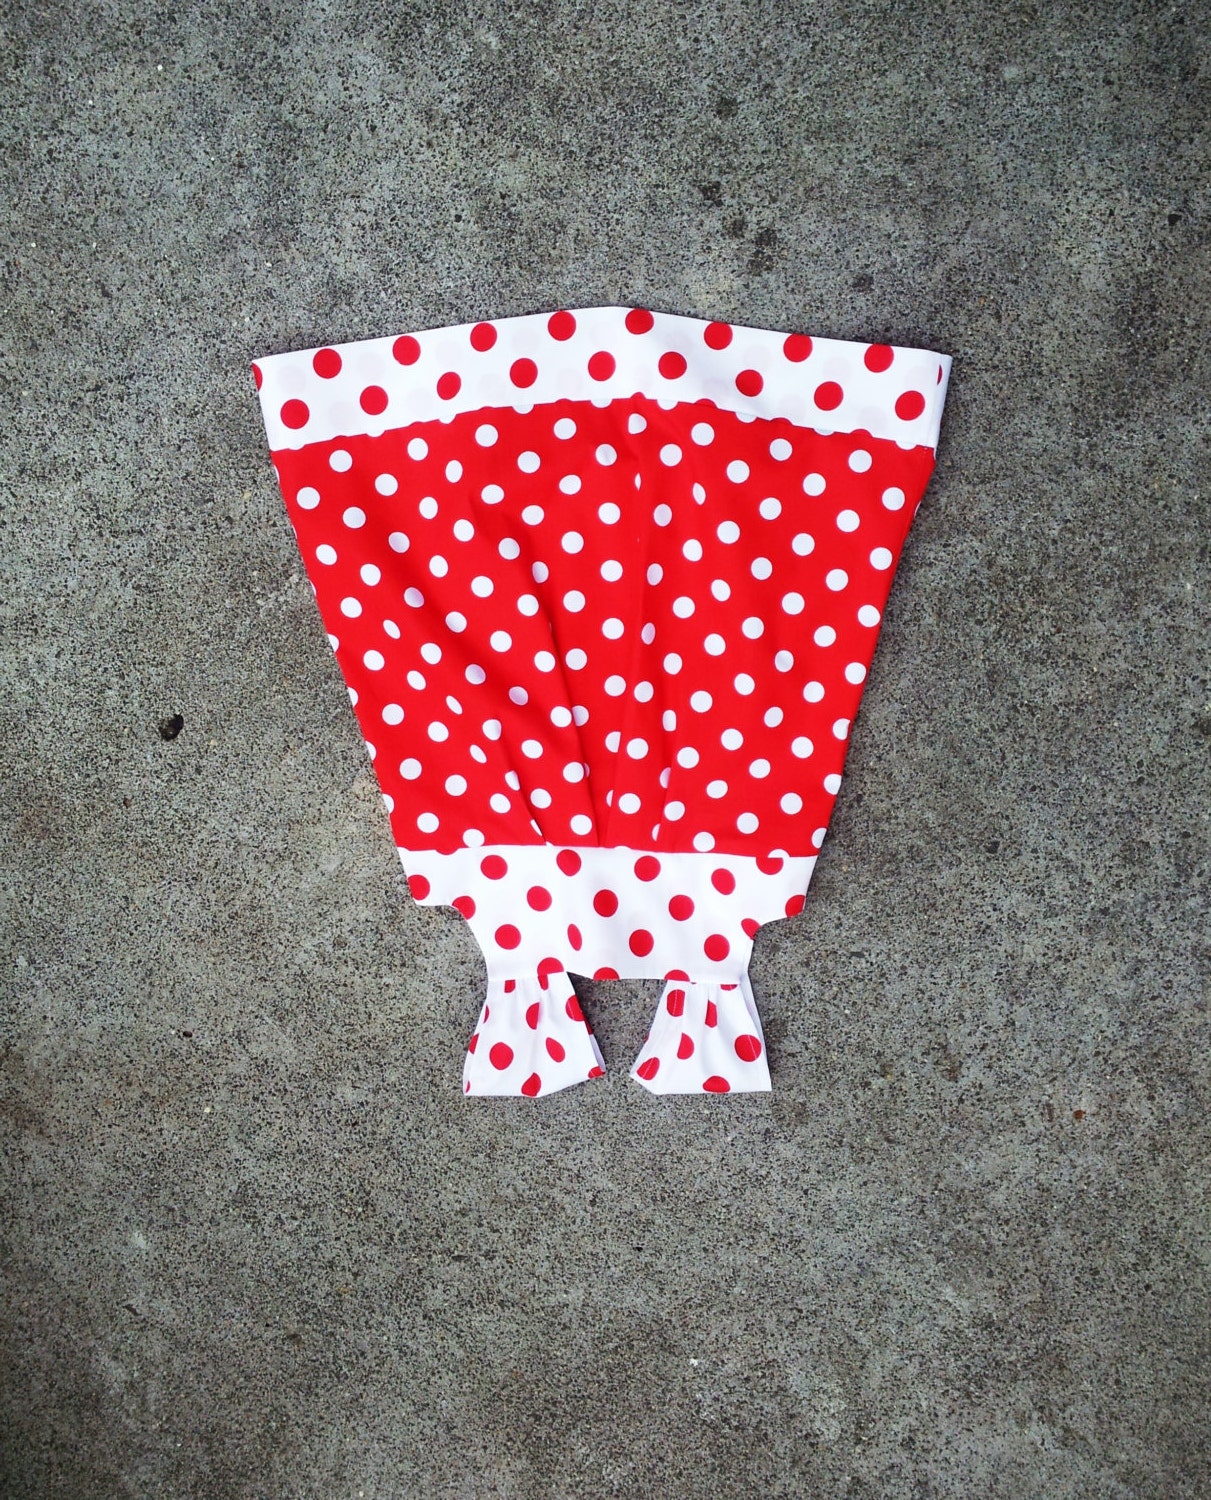 Red and white little girls dress polka dot toddler dress